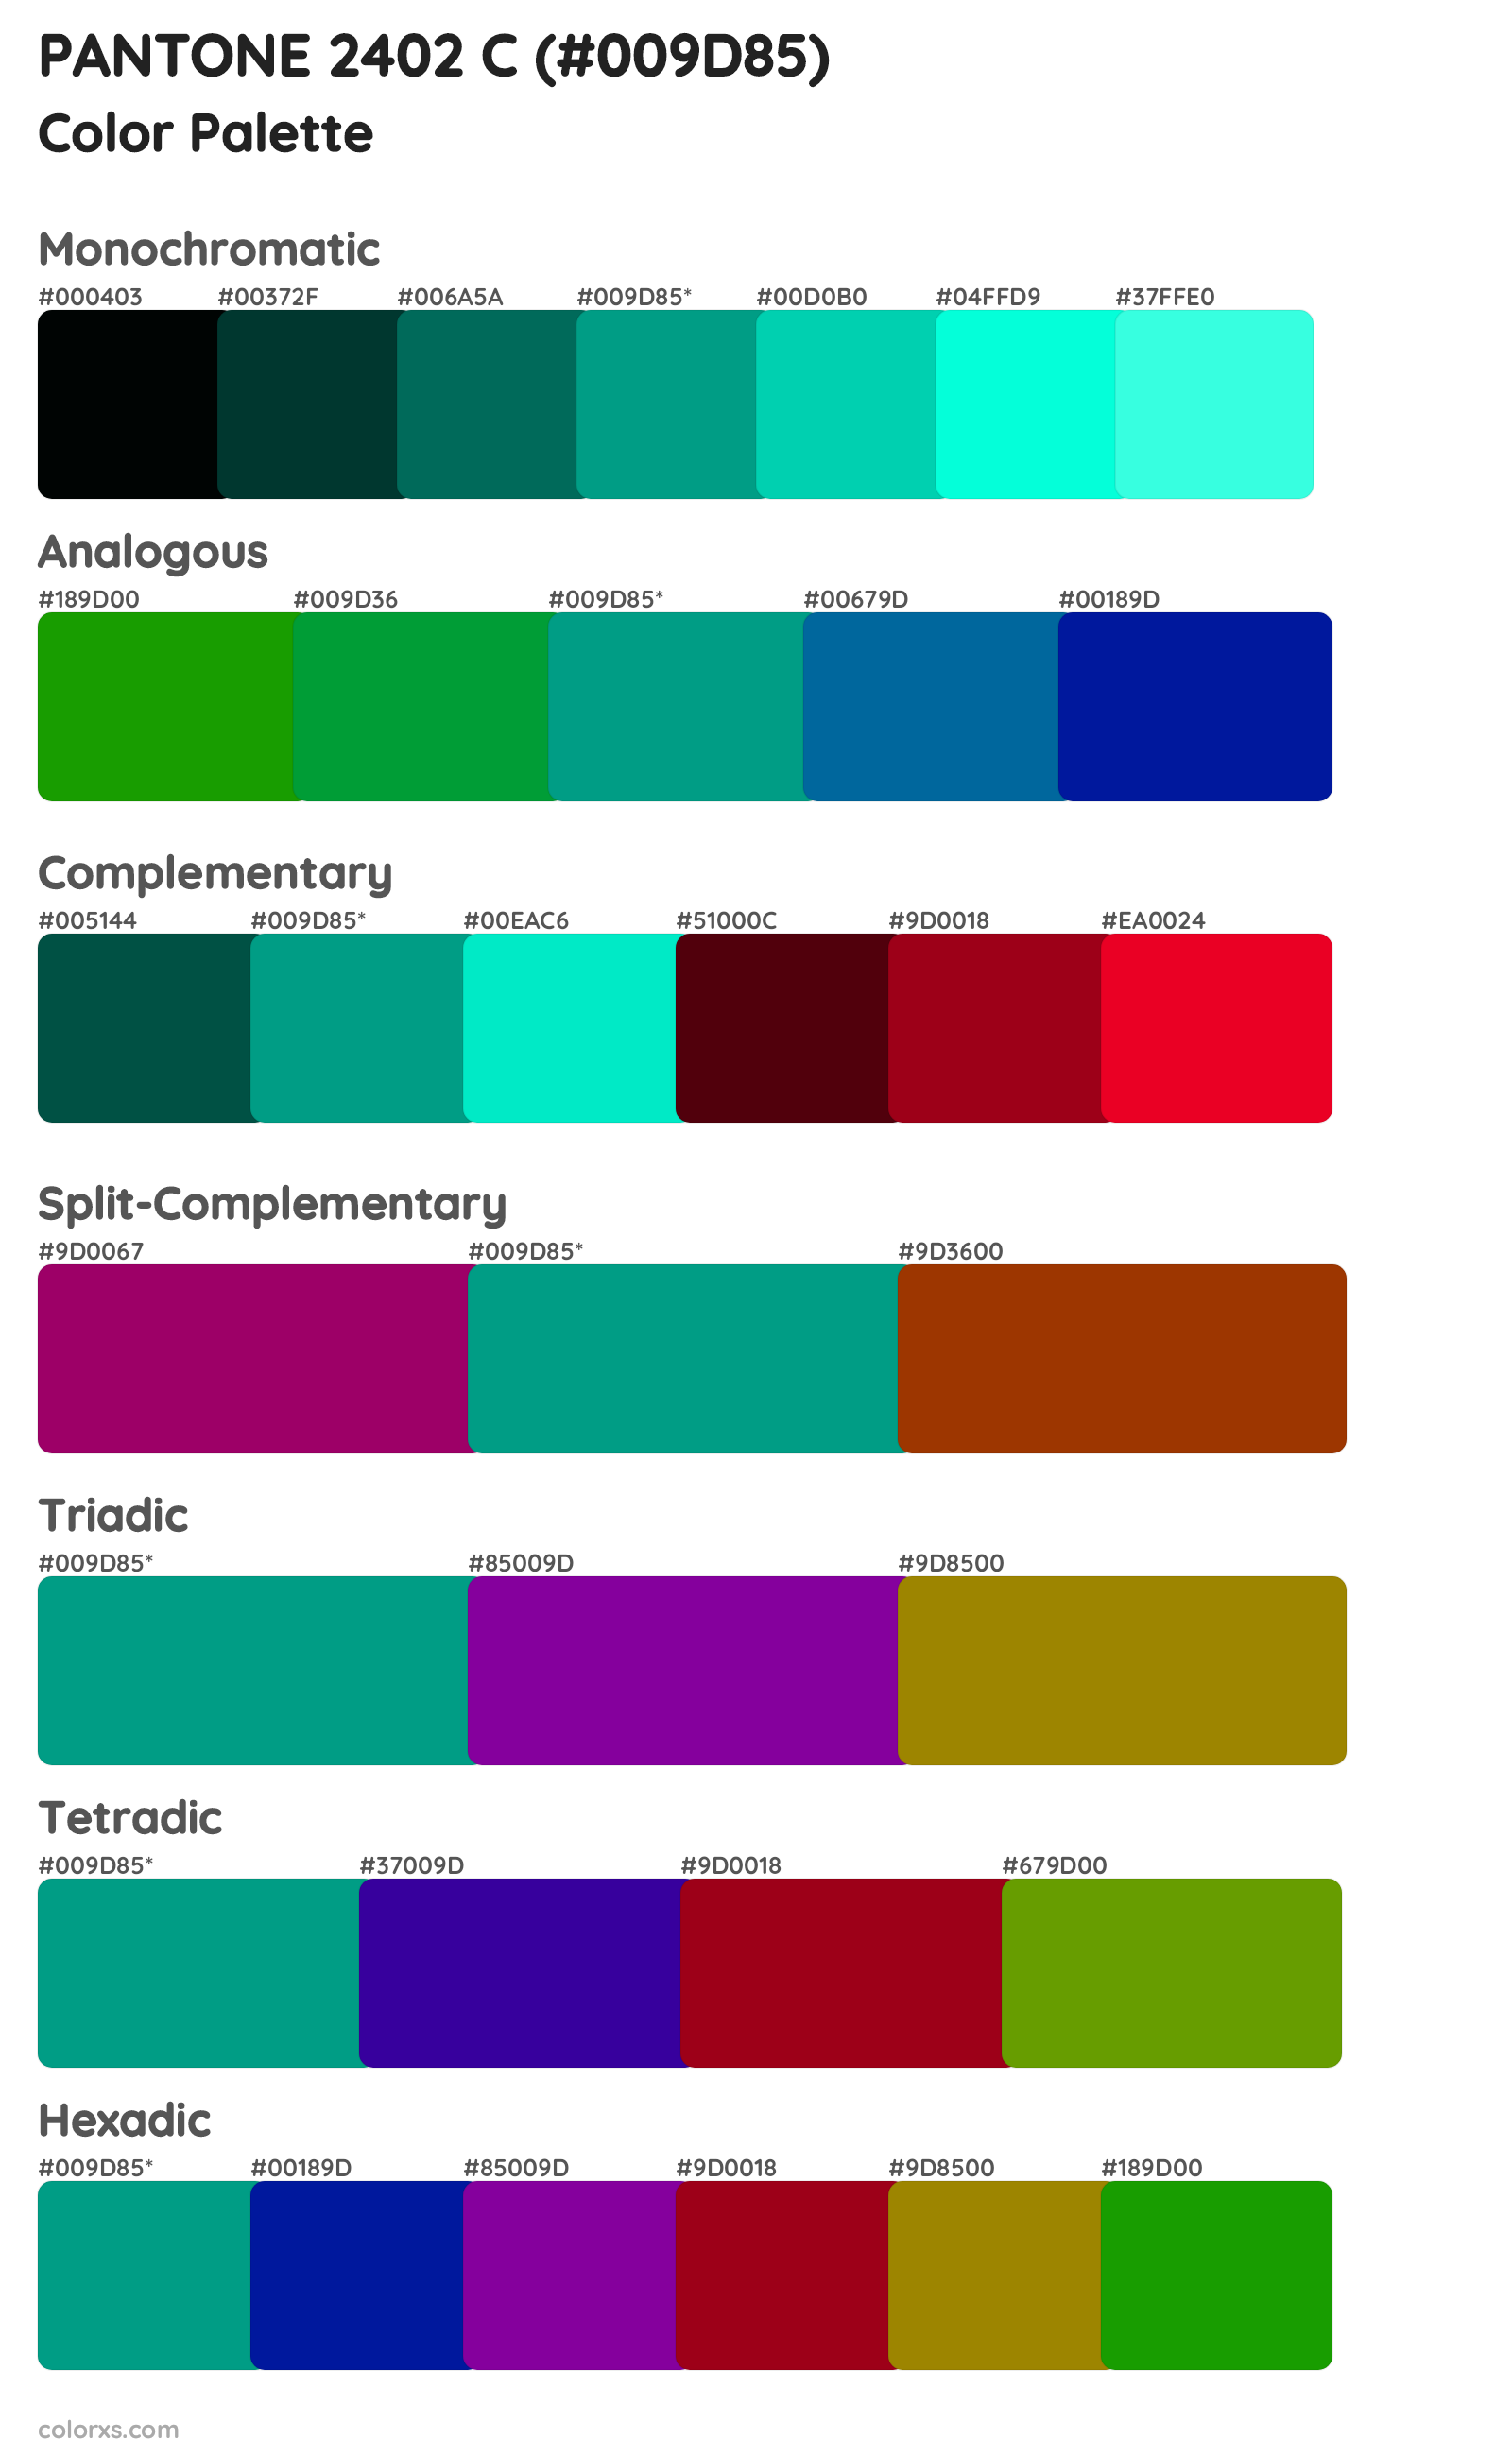 PANTONE 2402 C Color Scheme Palettes